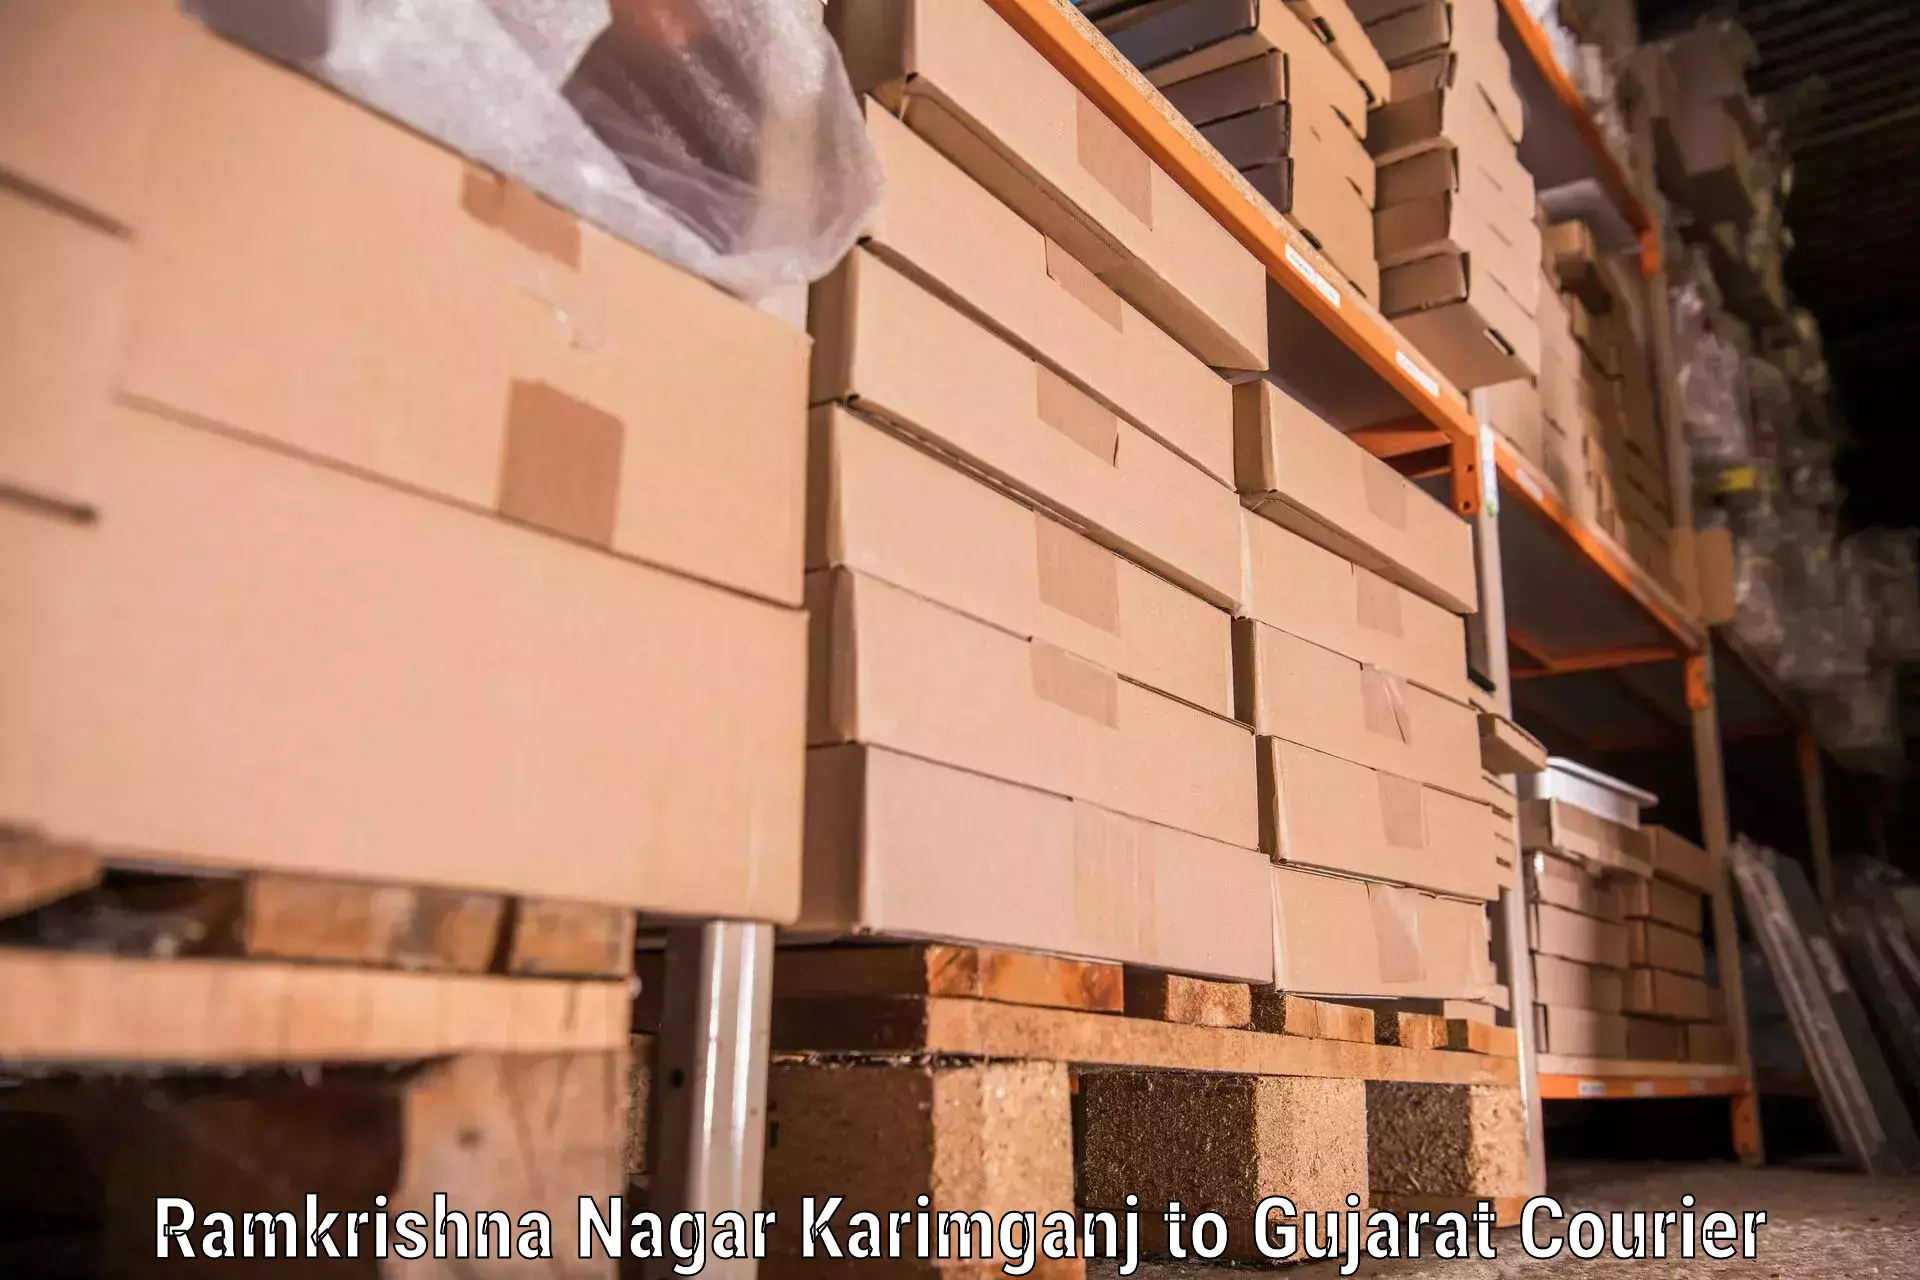 Furniture moving assistance in Ramkrishna Nagar Karimganj to Dhandhuka